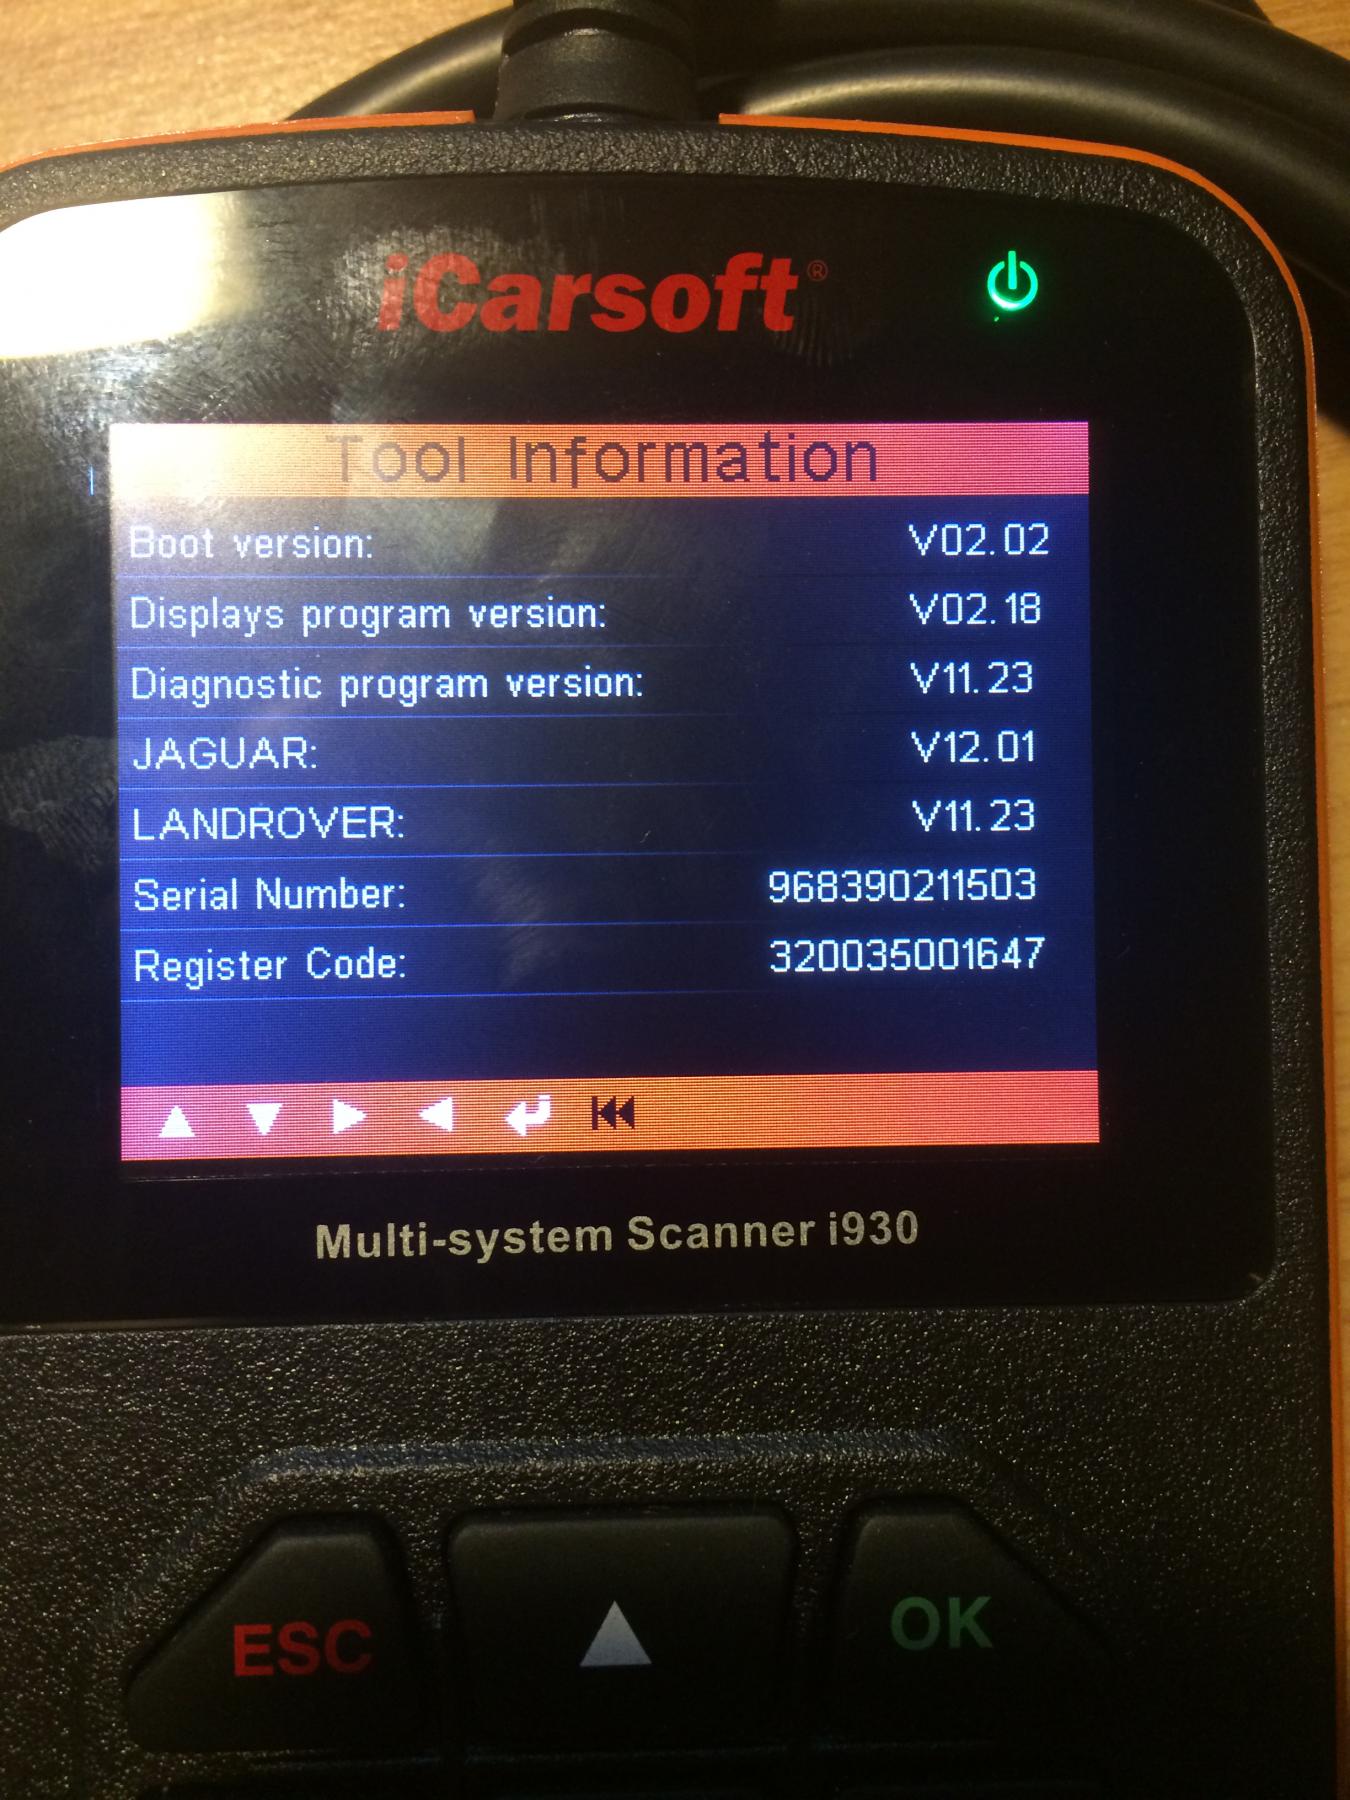 iCarsoft i930 Diagnostic Scan Fault Code Reader Tool Jaguar TF930